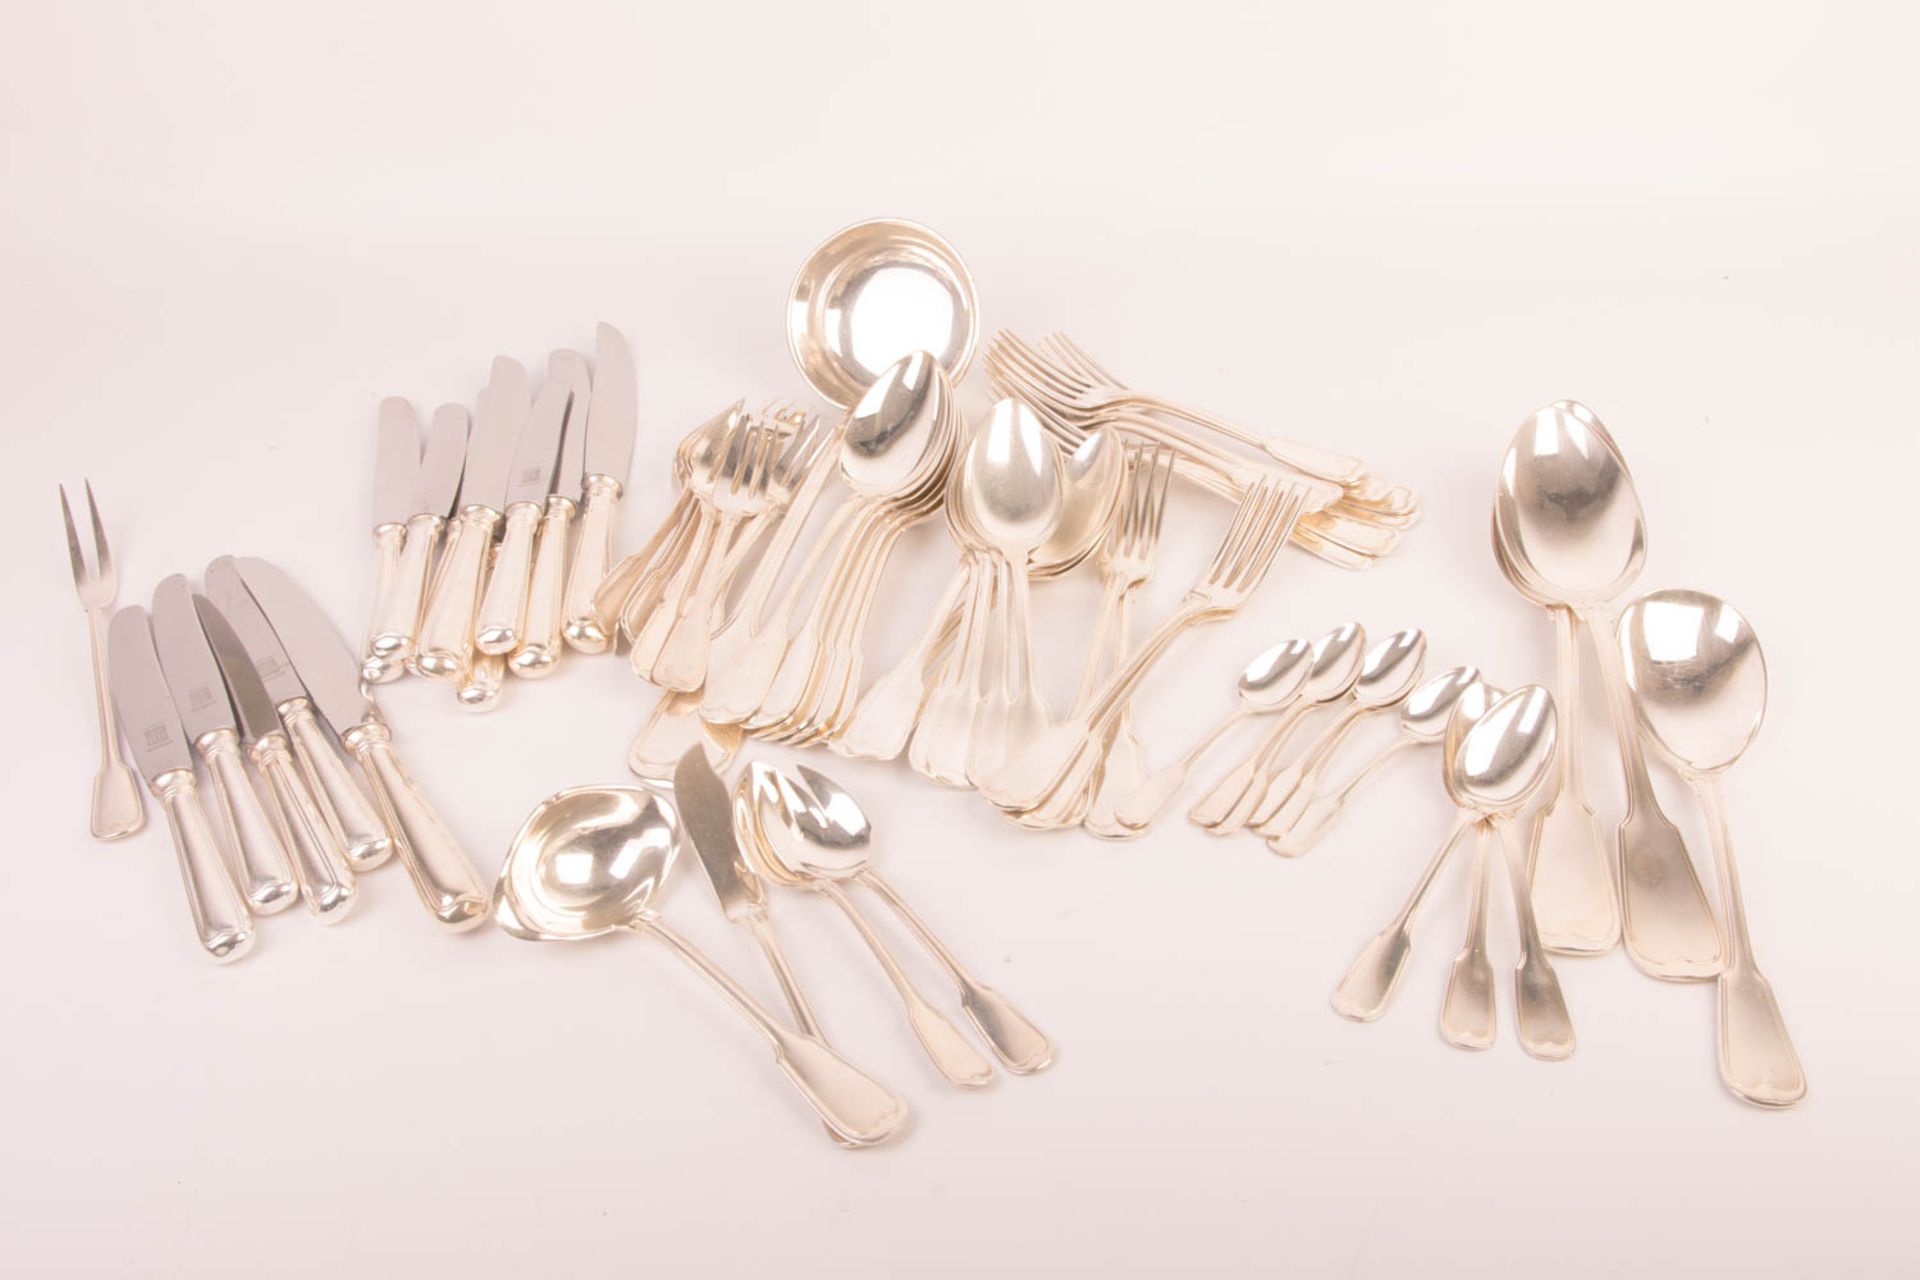 Bruckmann, Extensive cutlery set, 800 silver.